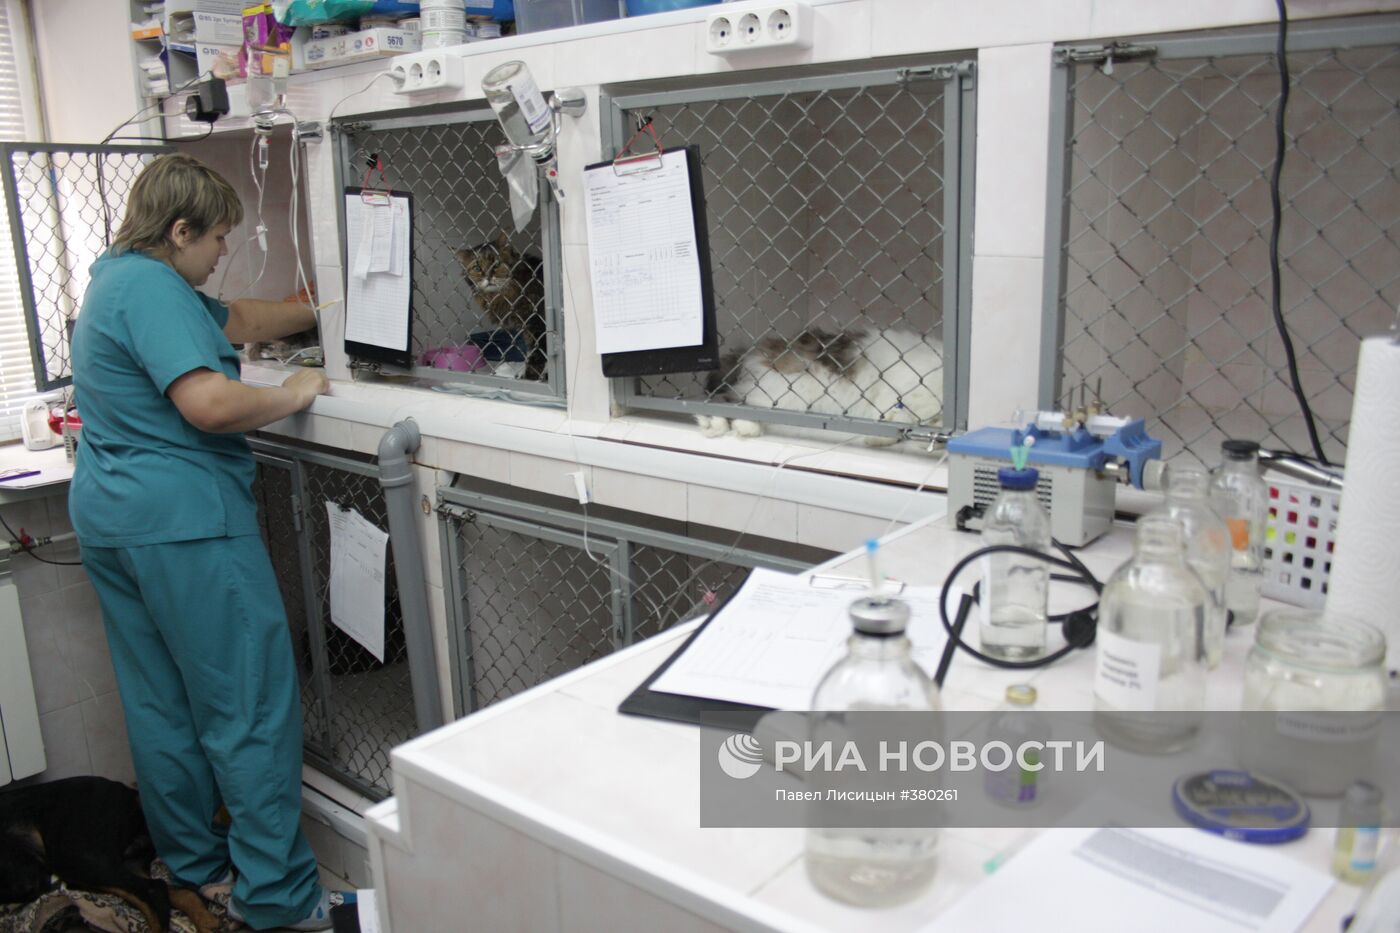 Работа ветеринарной клиники "Ветдоктор" в Екатеринбурге